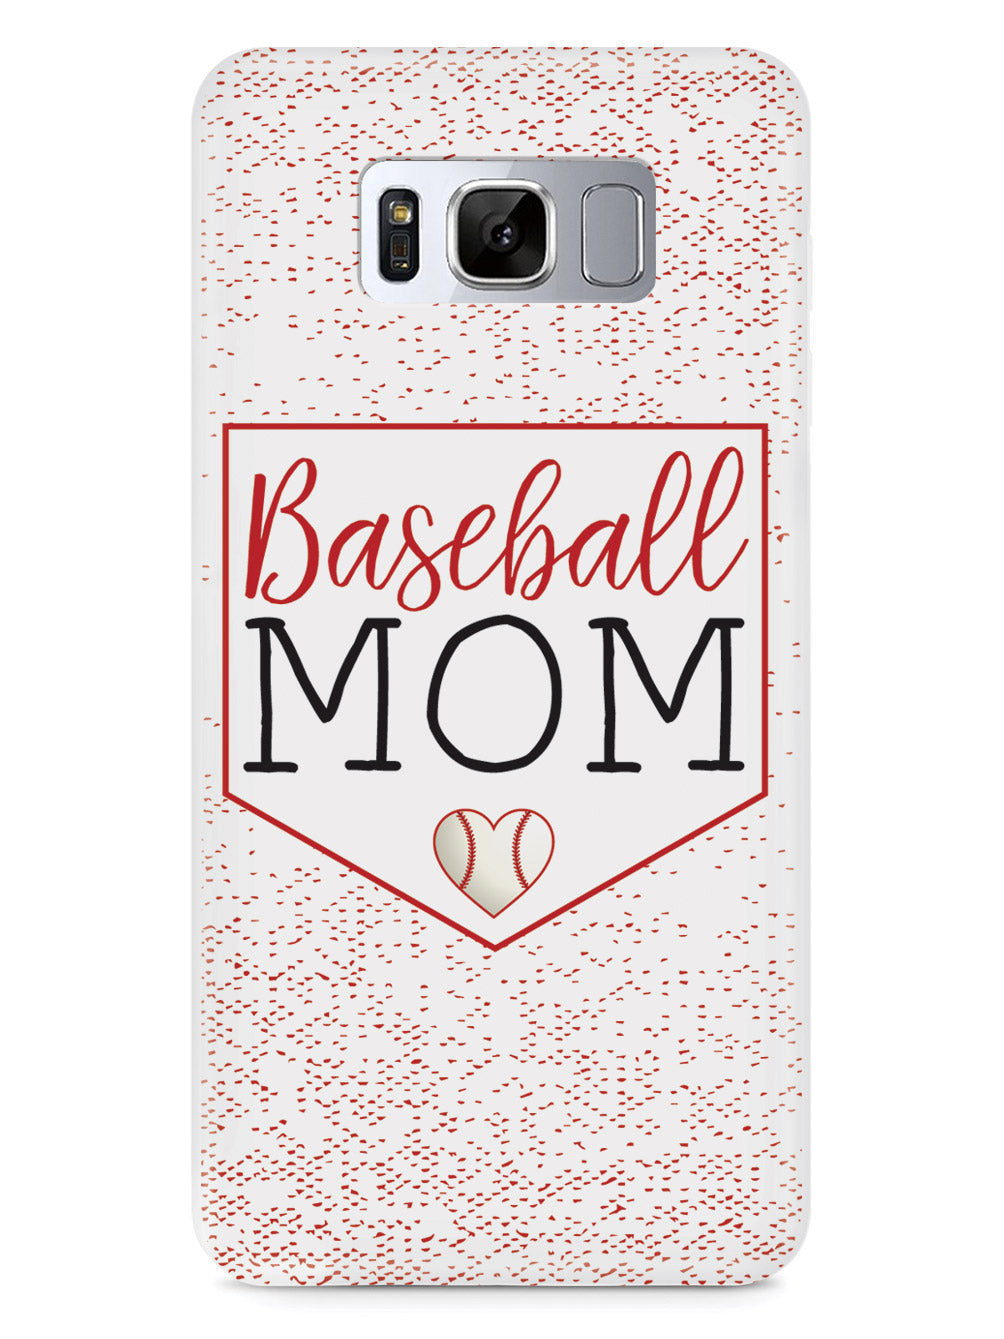 Baseball Mom Heart - White Case